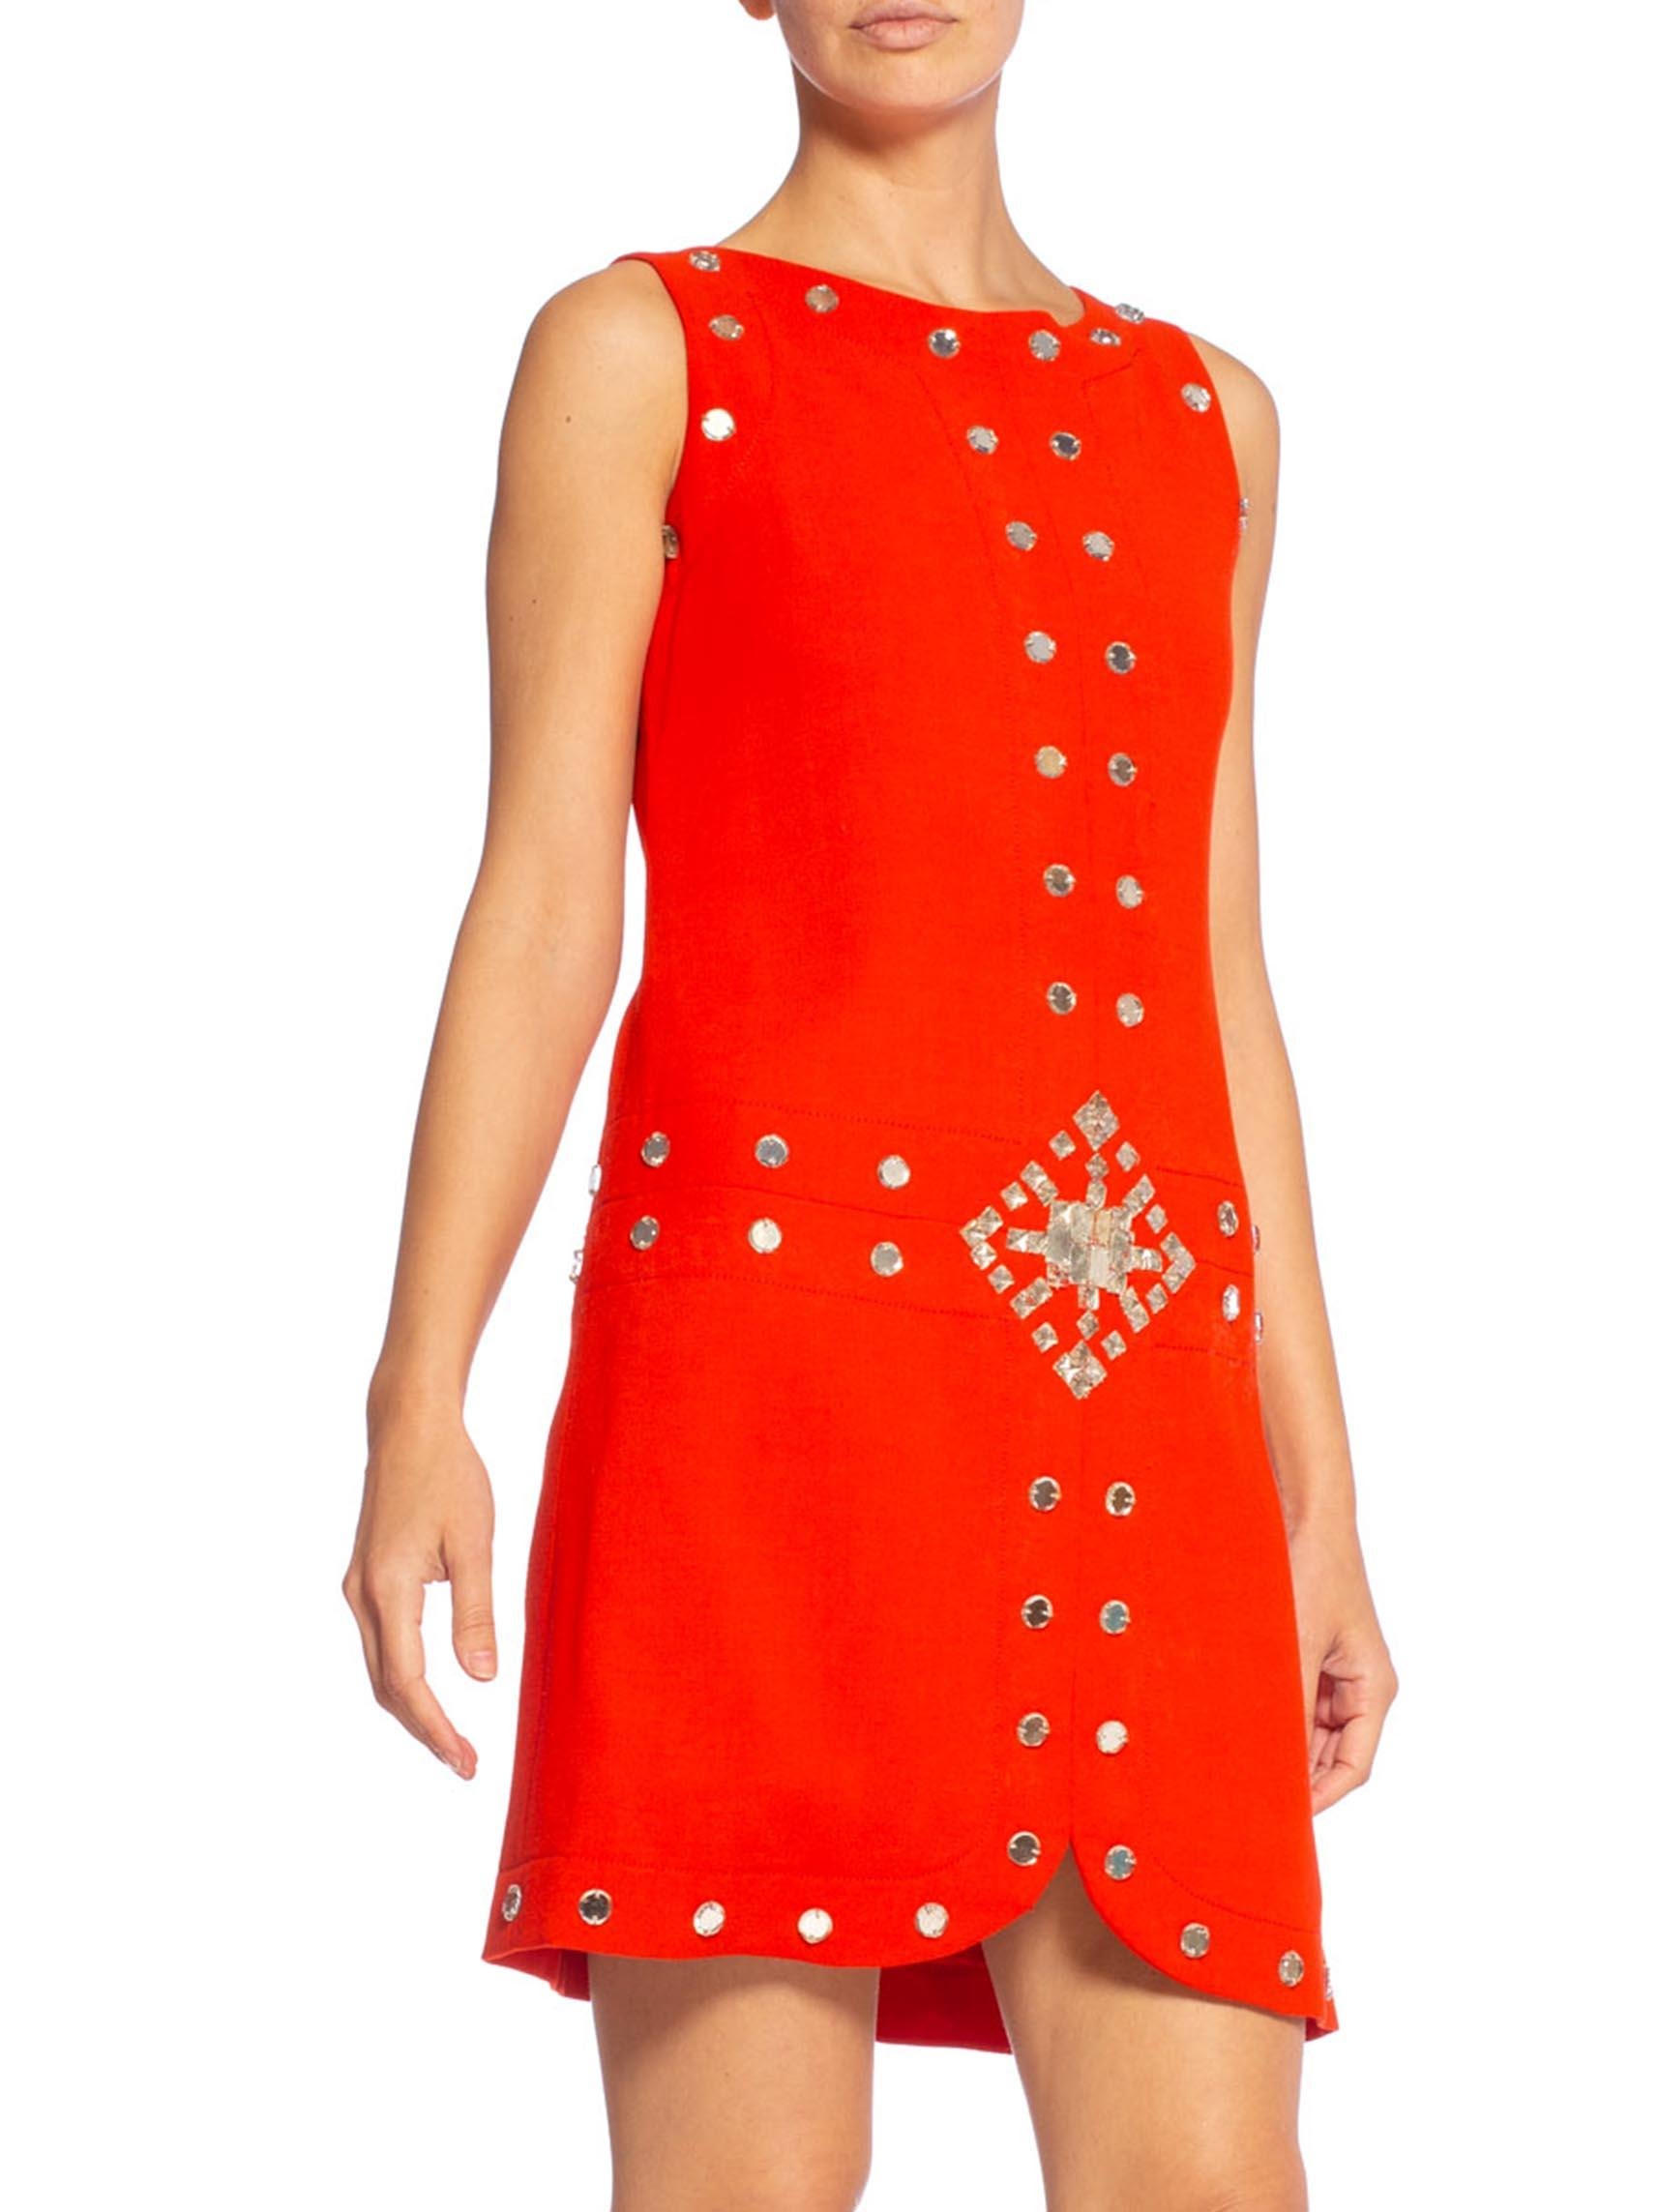 Haute Couture sans étiquette, plusieurs petits trous dans la laine, entièrement doublée en soie. 1960's AZZARO Coral Red Haute Couture Wool Crepe Mod Cocktail Dress With Antique Mirror Gems 